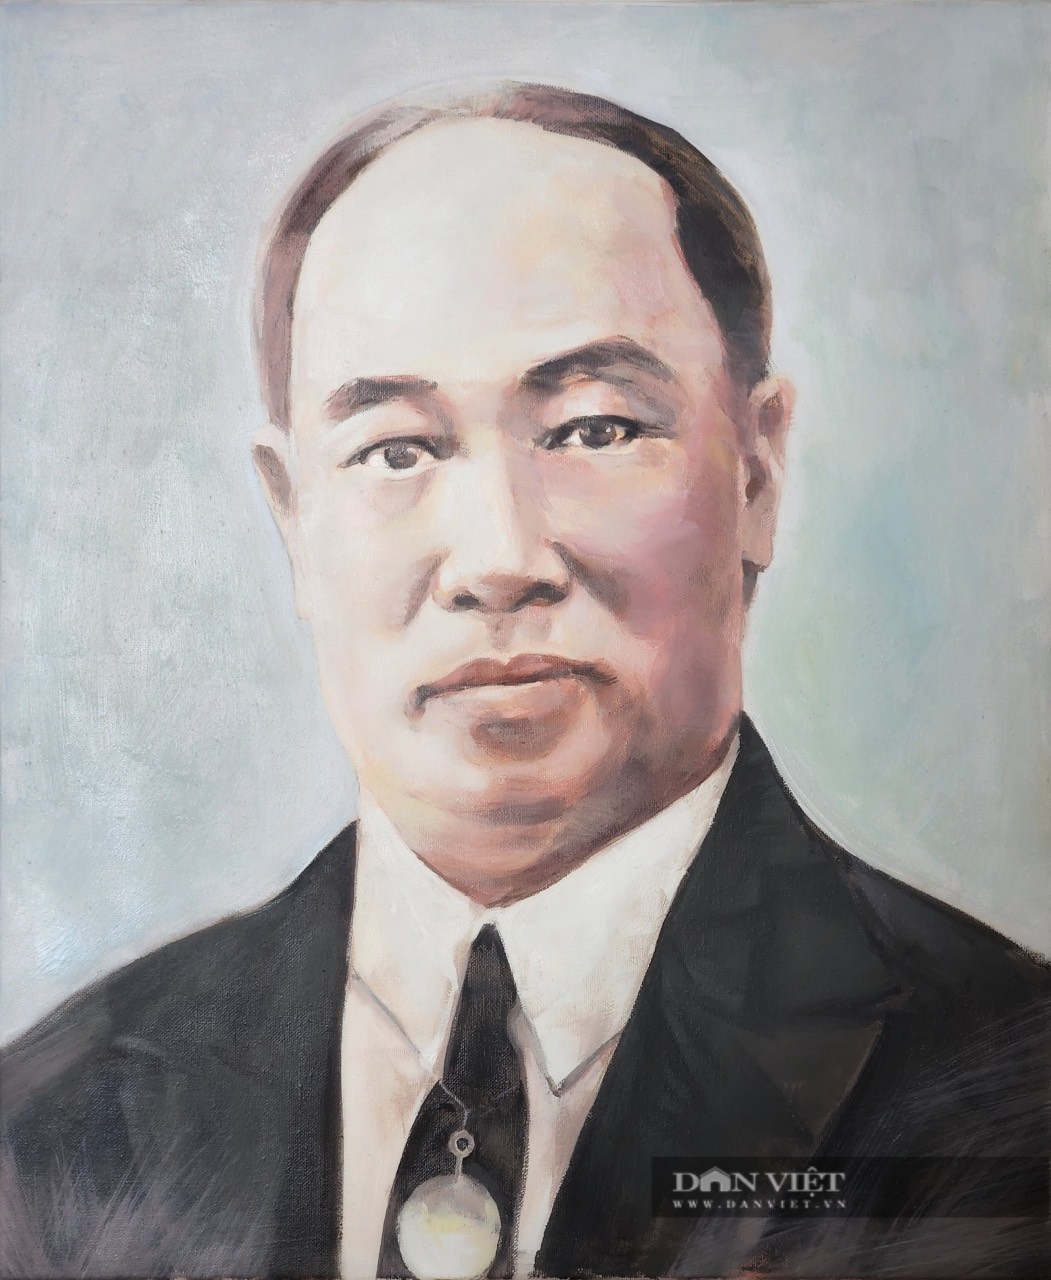 Triển lãm tranh về doanh nhân Phạm Nhật Vượng, Trương Gia Bình...            - Ảnh 6.